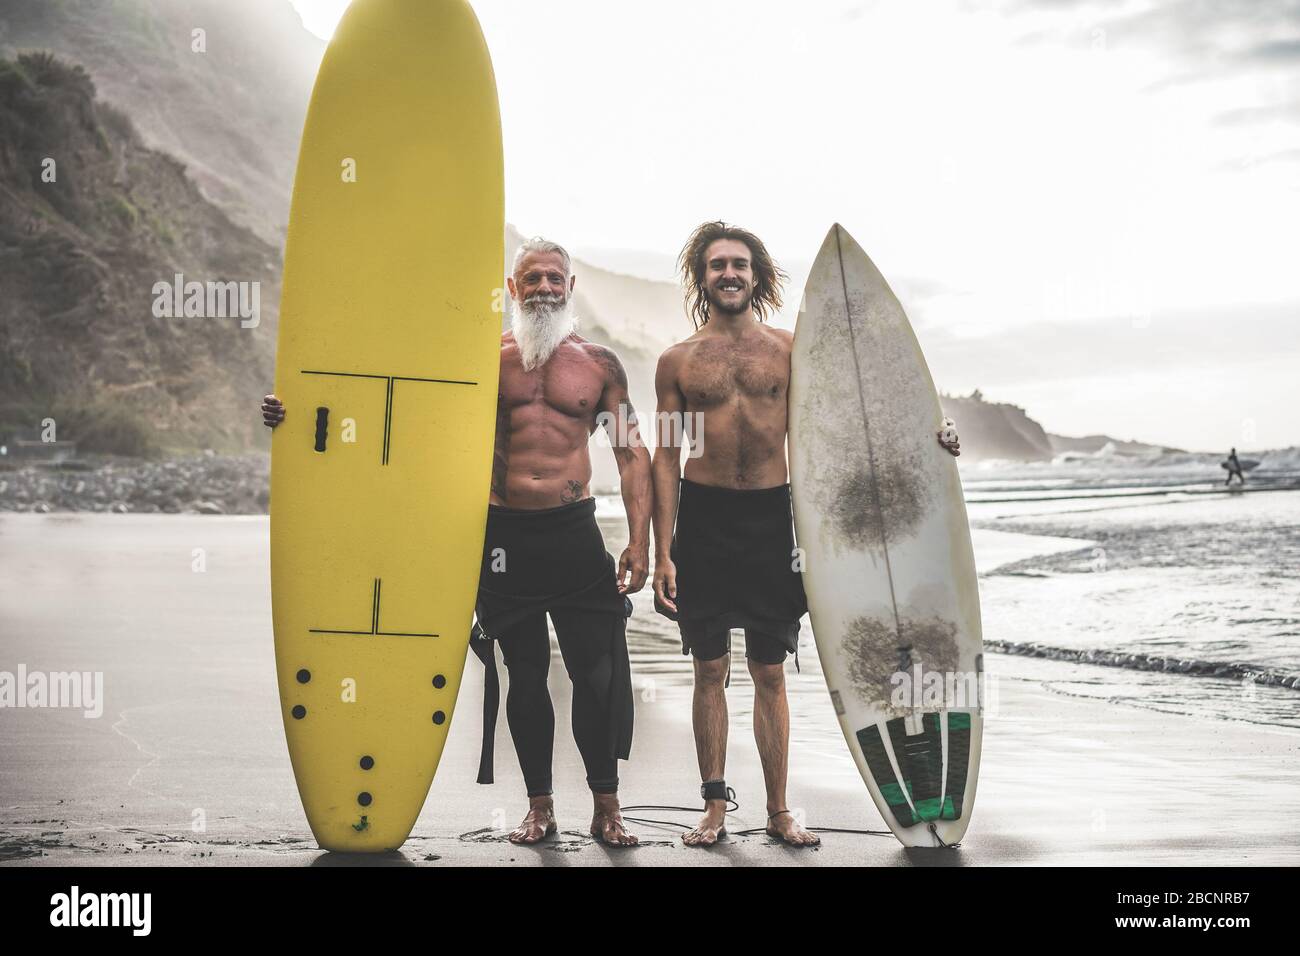 Mehrgenerationige Freunde, die am tropischen Strand surfen - Familienmitglieder haben Spaß am Extremsport - fröhliches älteres und gesundes Lifestyle-Konzept Stockfoto